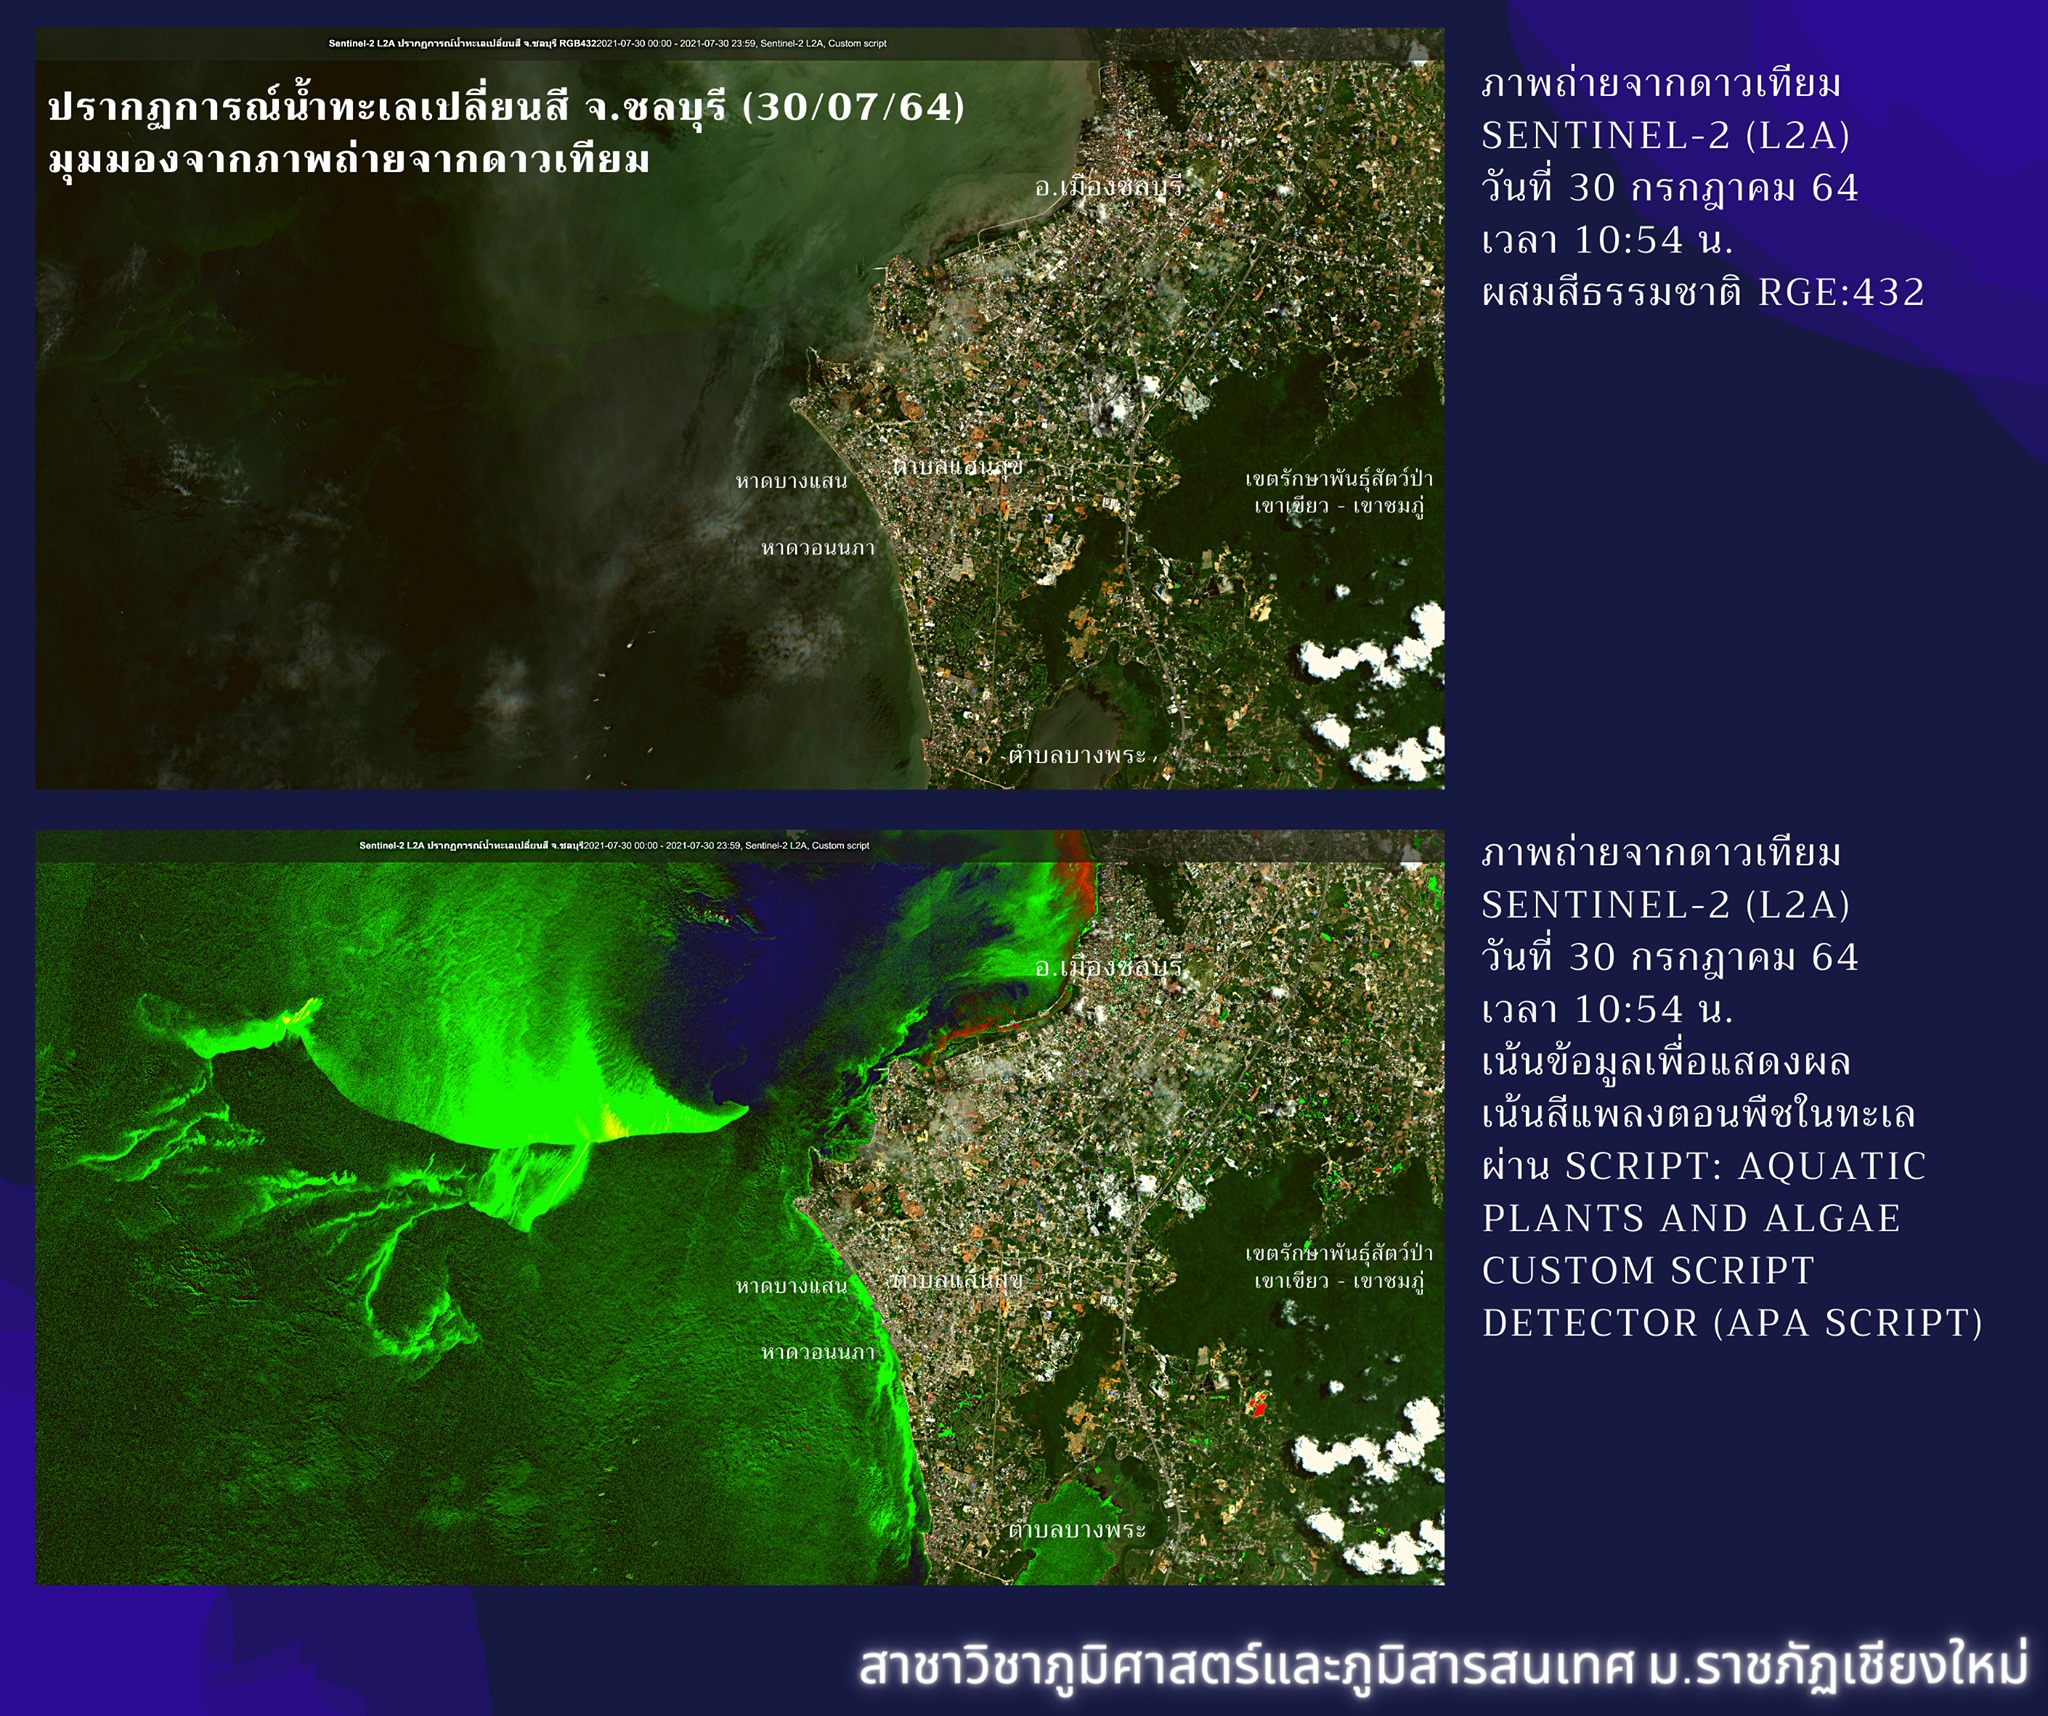 You are currently viewing ปรากฏการณ์น้ำทะเลเปลี่ยนสี จ.ชลบุรี จากมุมมองภาพถ่ายจากดาวเทียม